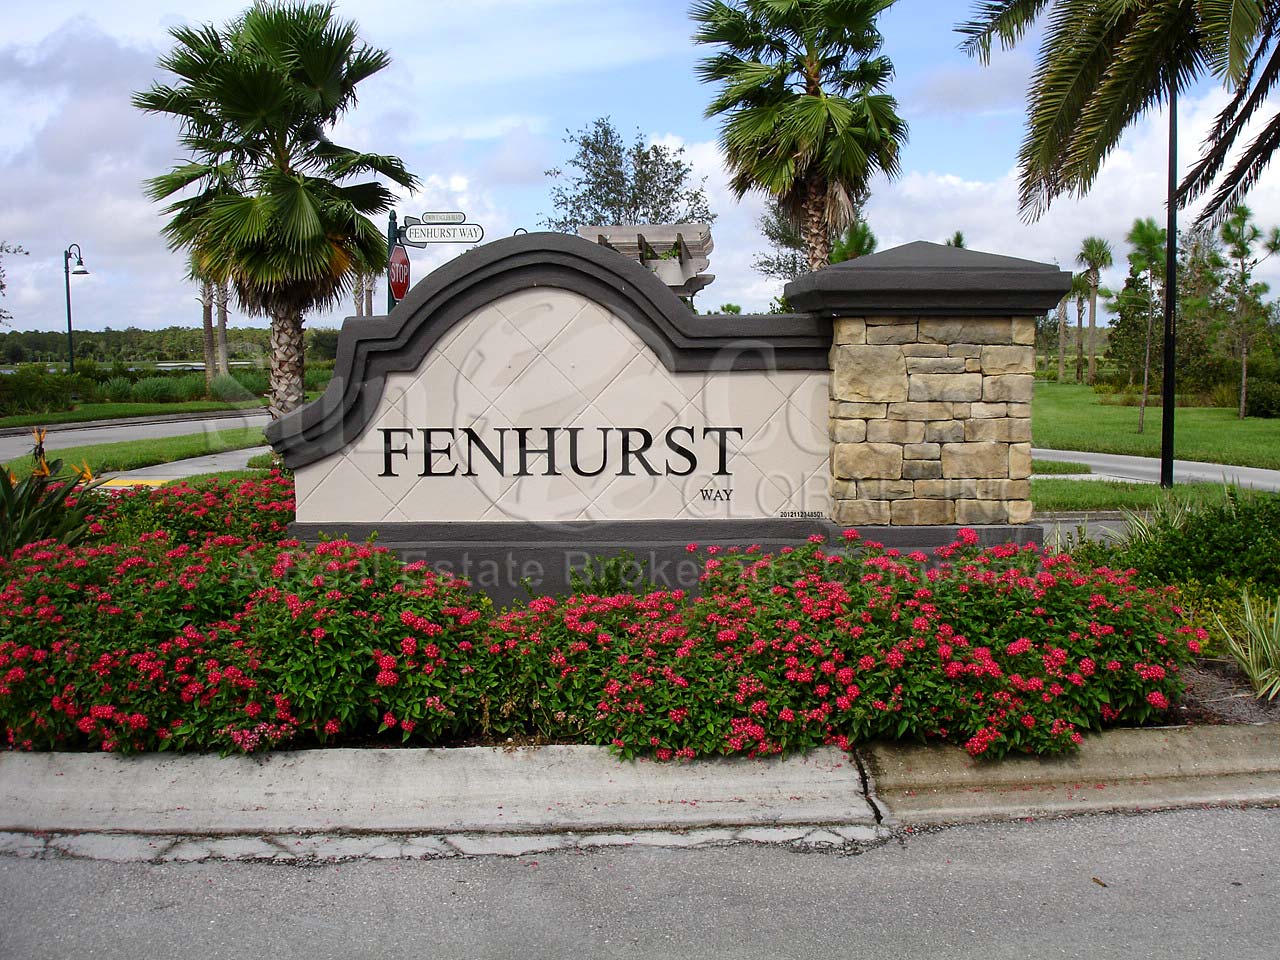 Fenhurst Signage